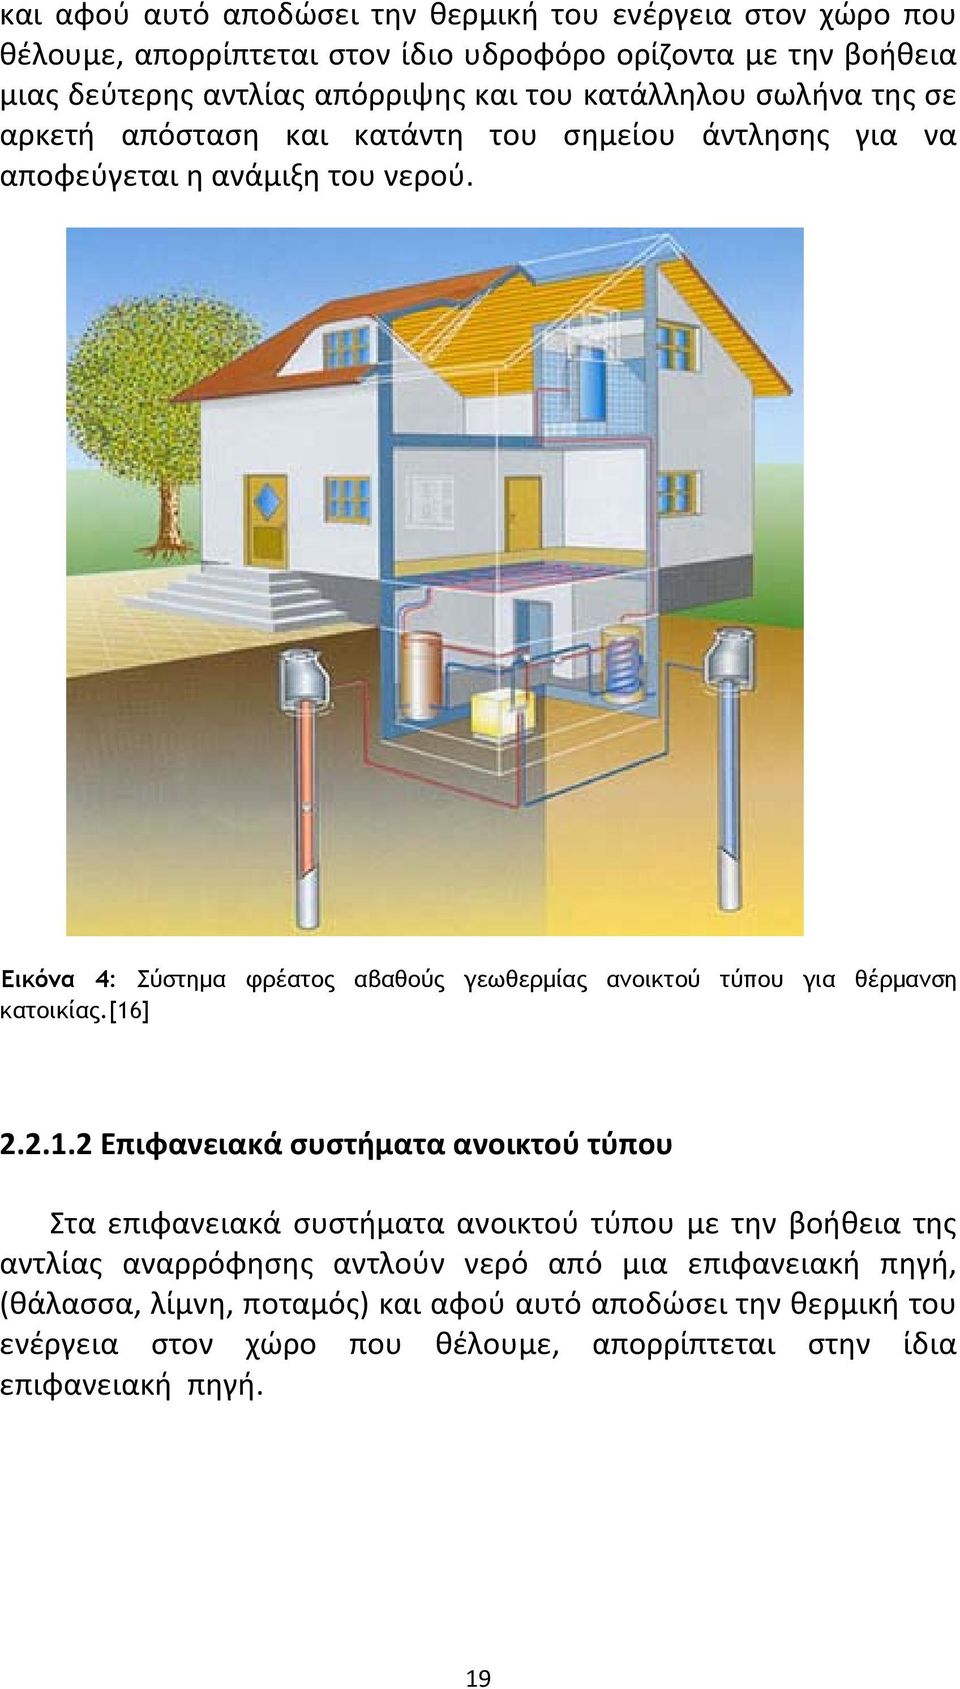 Εικόνα 4: Σύστημα φρέατος αβαθούς γεωθερμίας ανοικτού τύπου για θέρμανση κατοικίας.[16